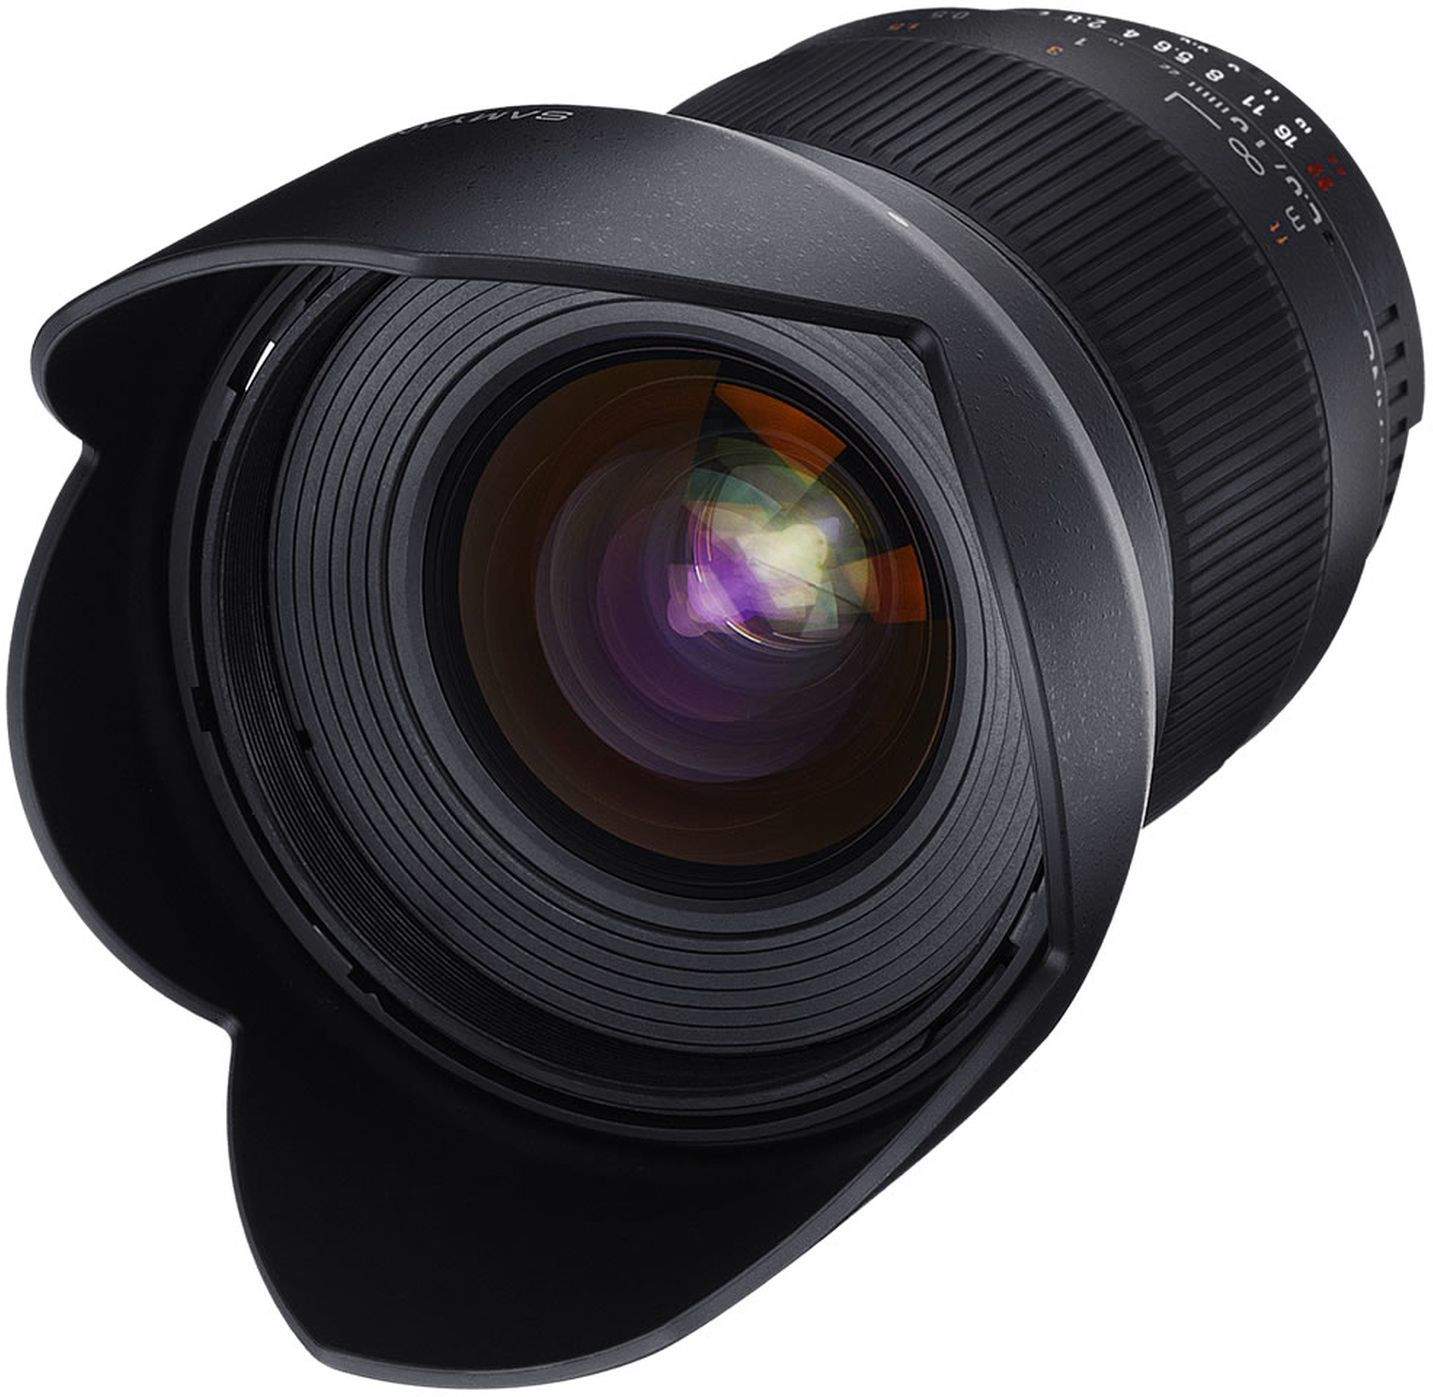 Samyang 16mm F2.0 UMC II APS-C Olympus FT Camera Lens